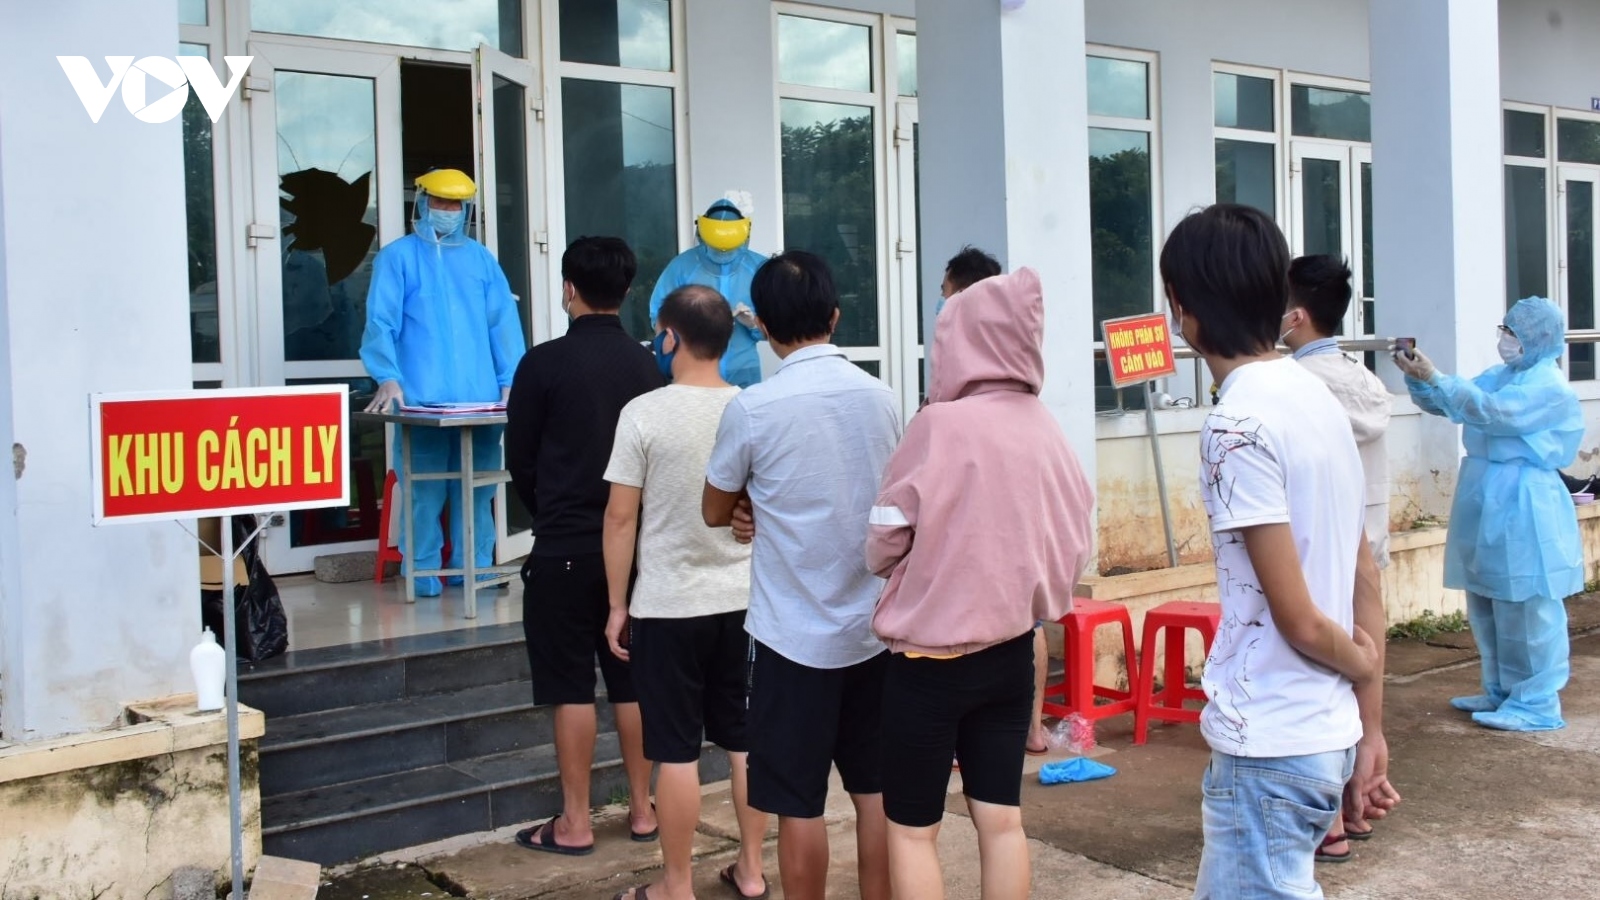 20 công dân Thừa Thiên Huế đã được đưa từ Quảng Trị về cách ly tại Phong Điền